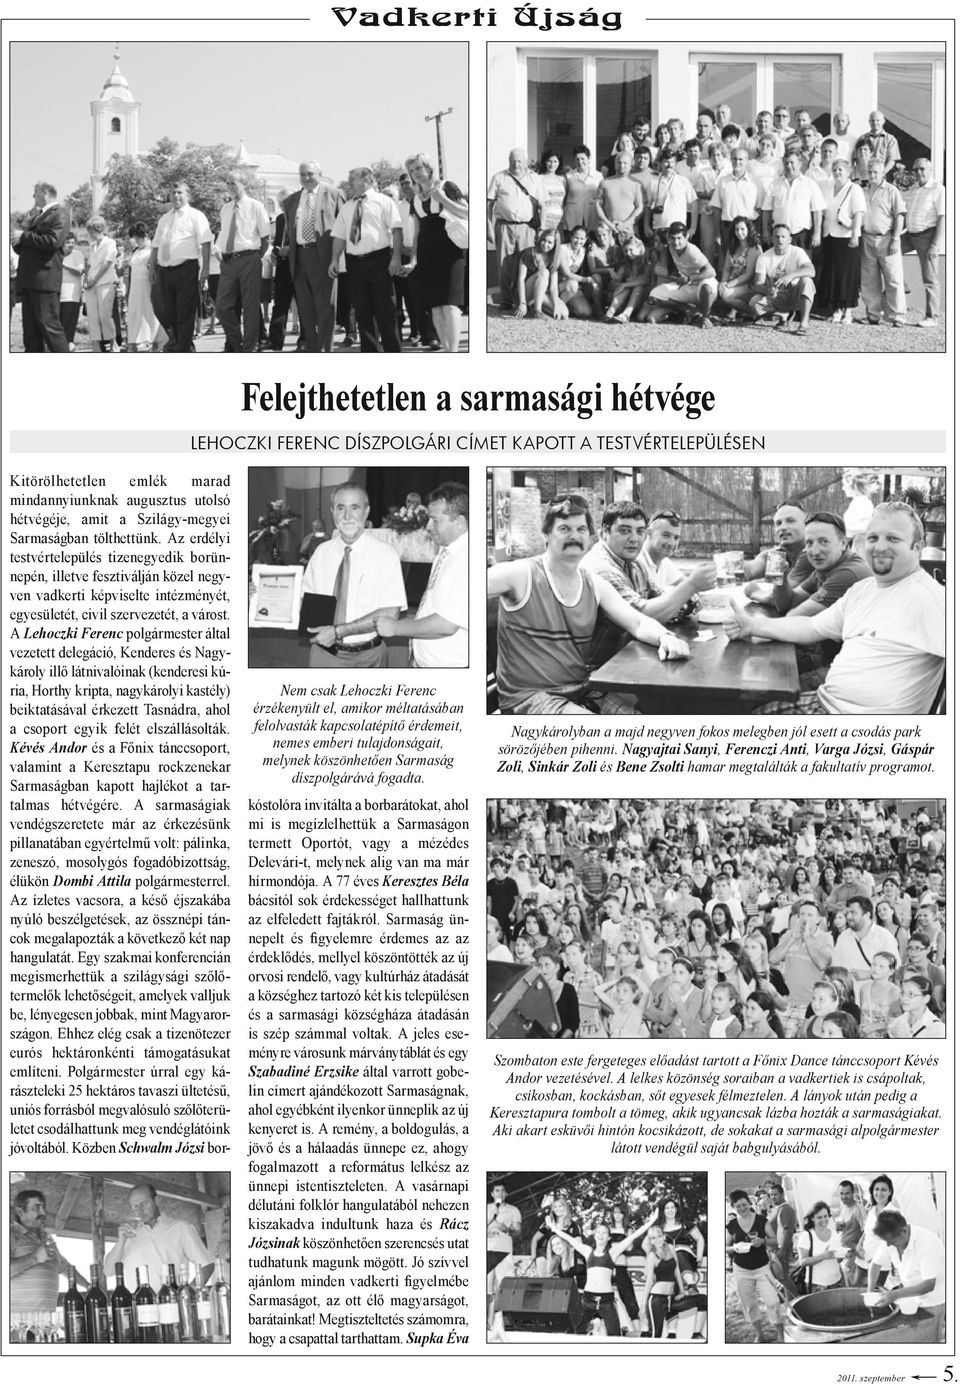 Az erdélyi testvértelepülés tizenegyedik borünnepén, illetve fesztiválján közel negyven vadkerti képviselte intézményét, egyesületét, civil szervezetét, a várost.